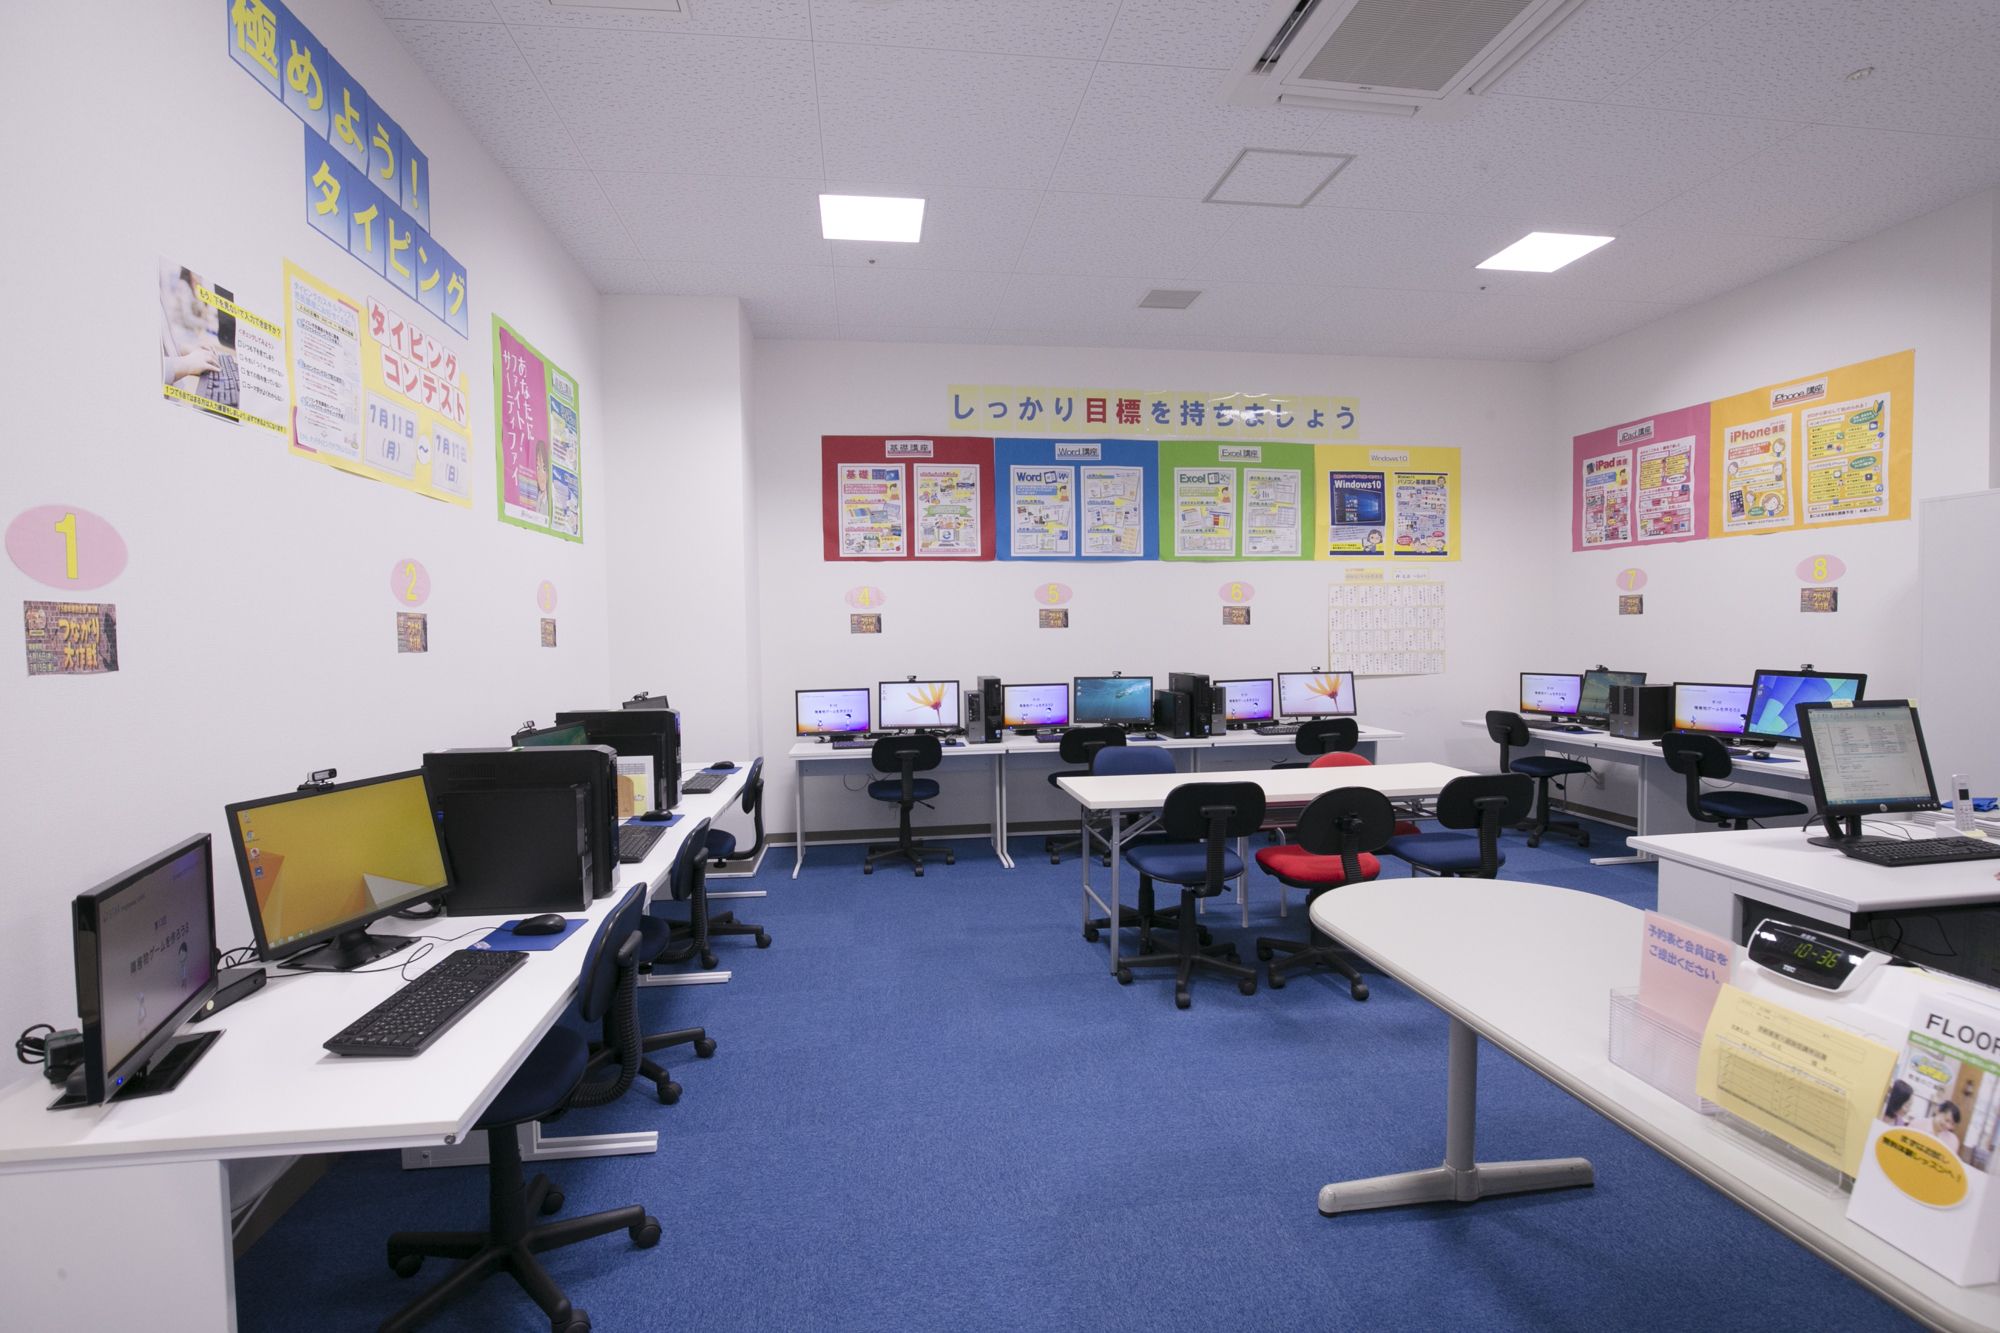 スタープログラミングスクール イトーヨーカドー川崎教室